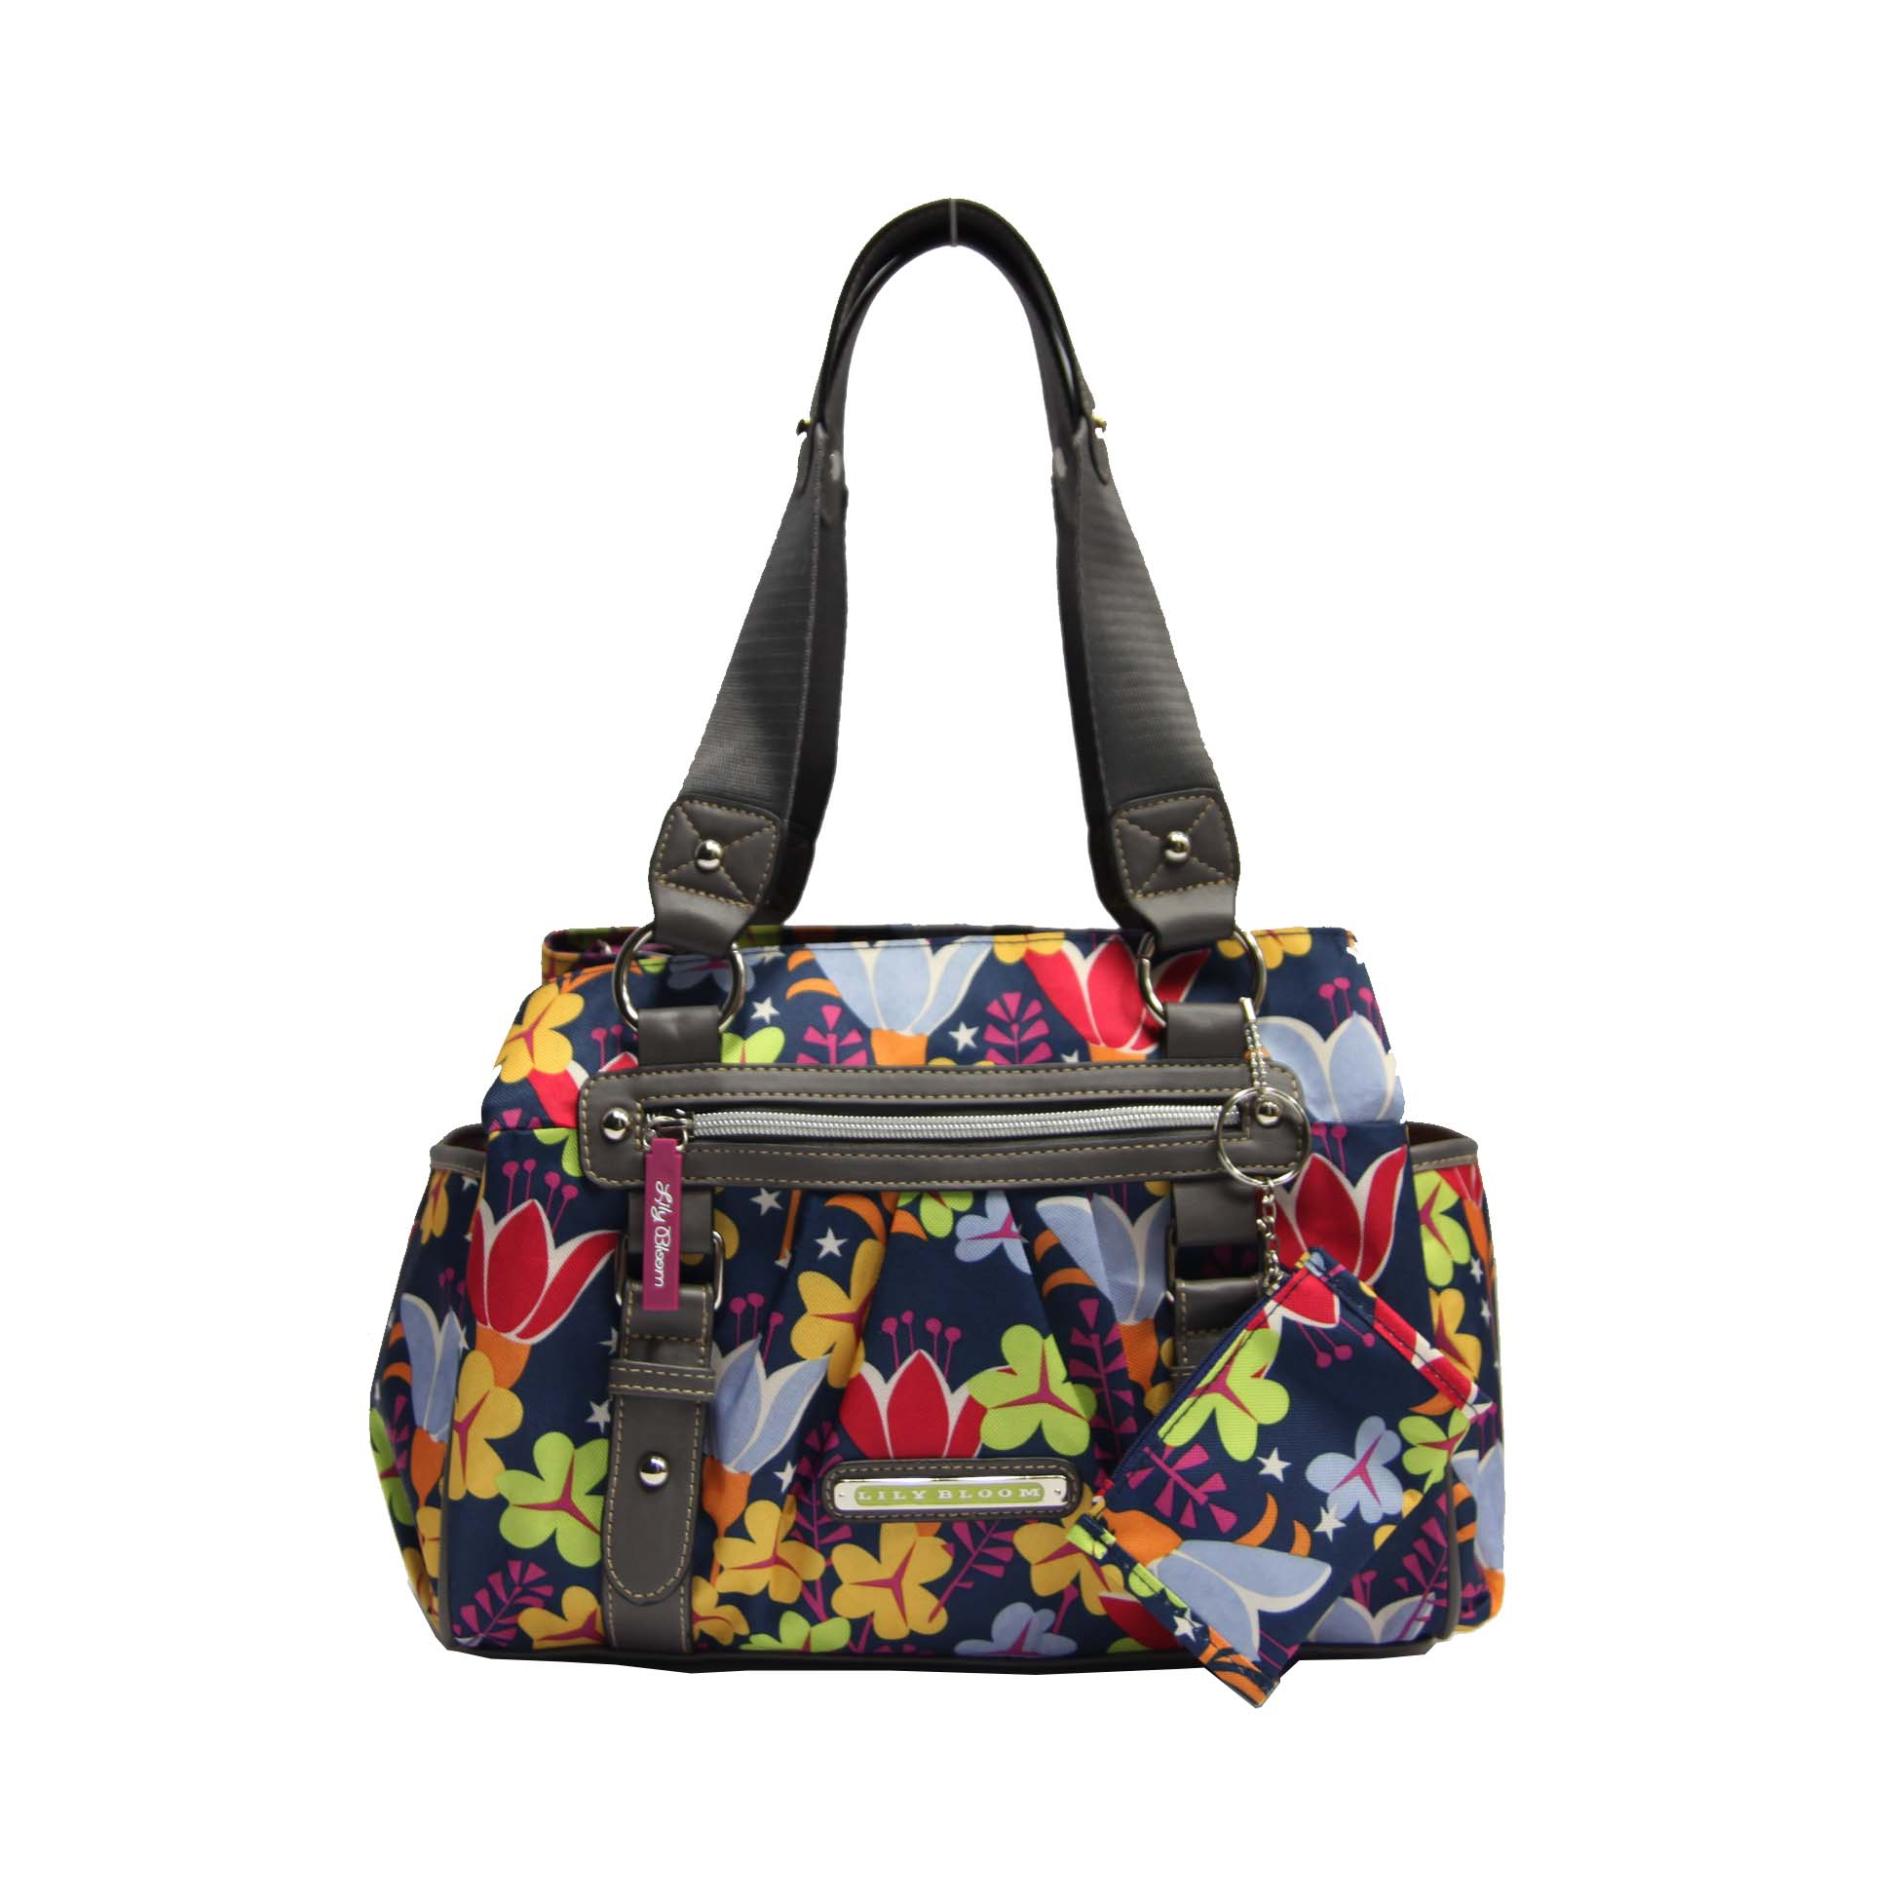 Lily Bloom Women's Triple-Section Satchel Bag ï¿½ Floral Print | Shop ...